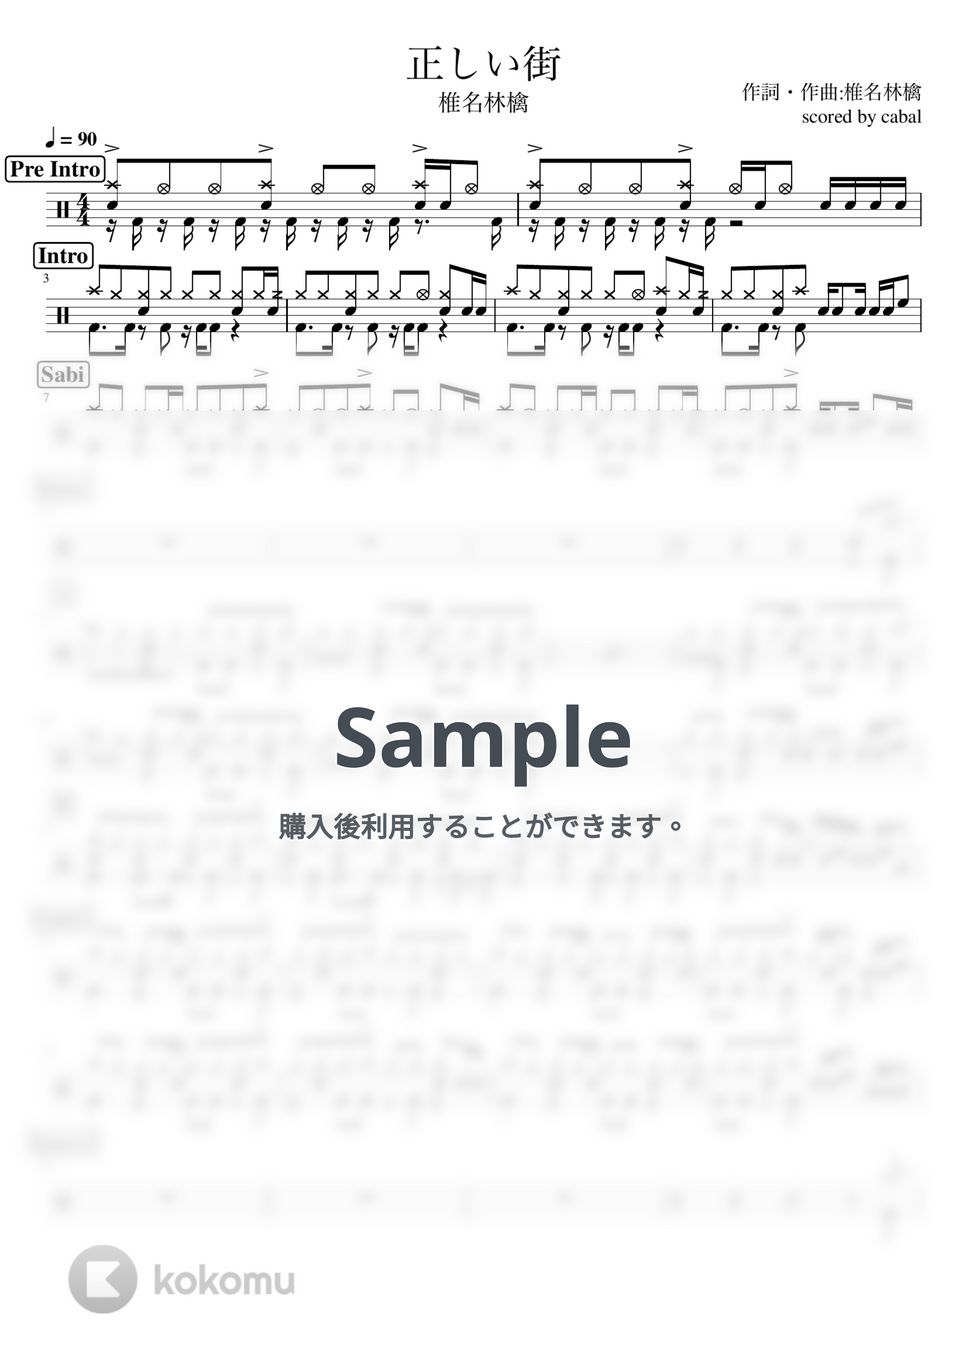 椎名林檎 - 正しい街 (ドラム譜面) by cabal